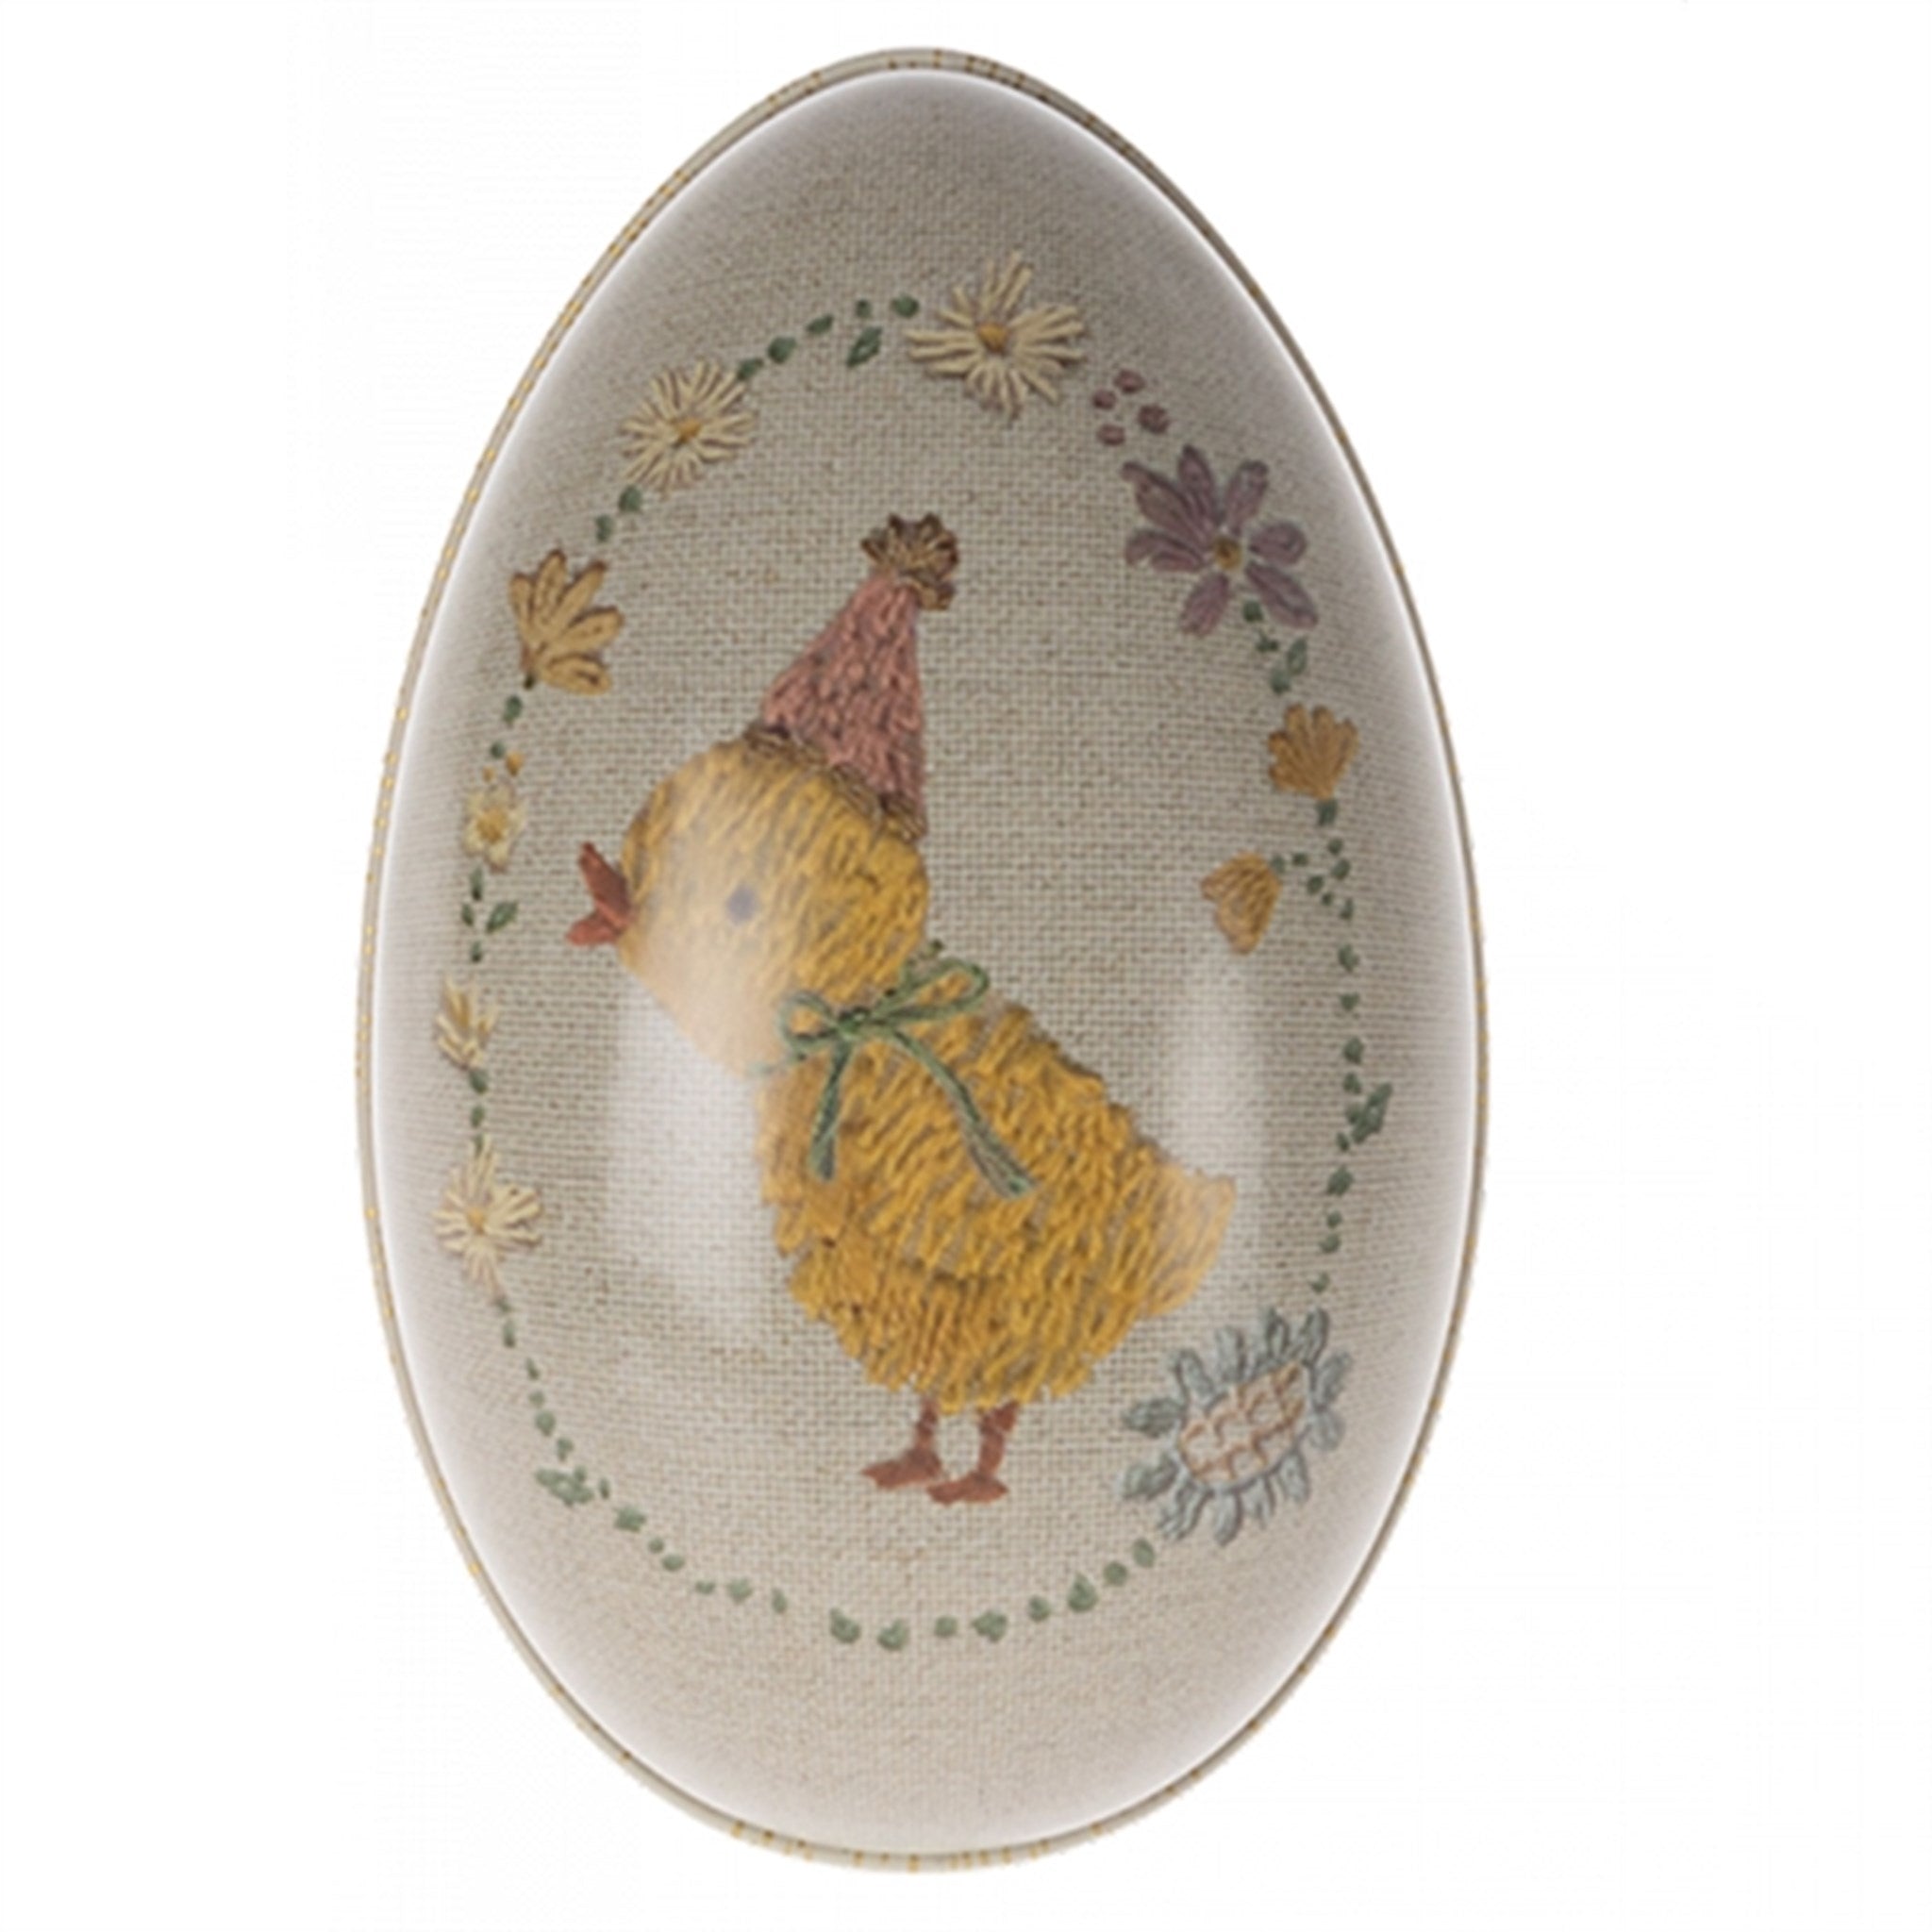 Maileg Easter Egg, Small - Chicken